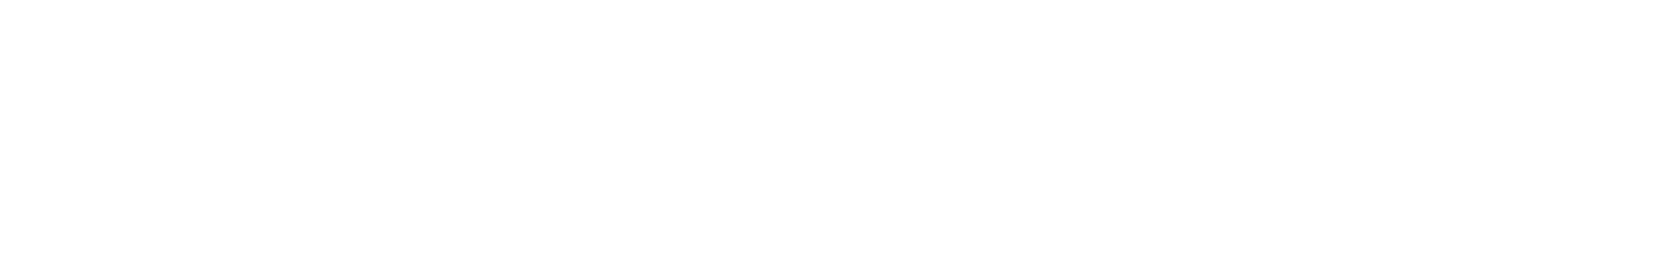 「KINGDOM HEARTS Concert - Second Breath -」はブラスバンドによる「KINGDOM HEARTS」シリーズのオフィシャルコンサートです。「KINGDOM HEARTS」の楽曲を、ブラスバンドによる迫力の演奏でお楽しみいただくことができます。